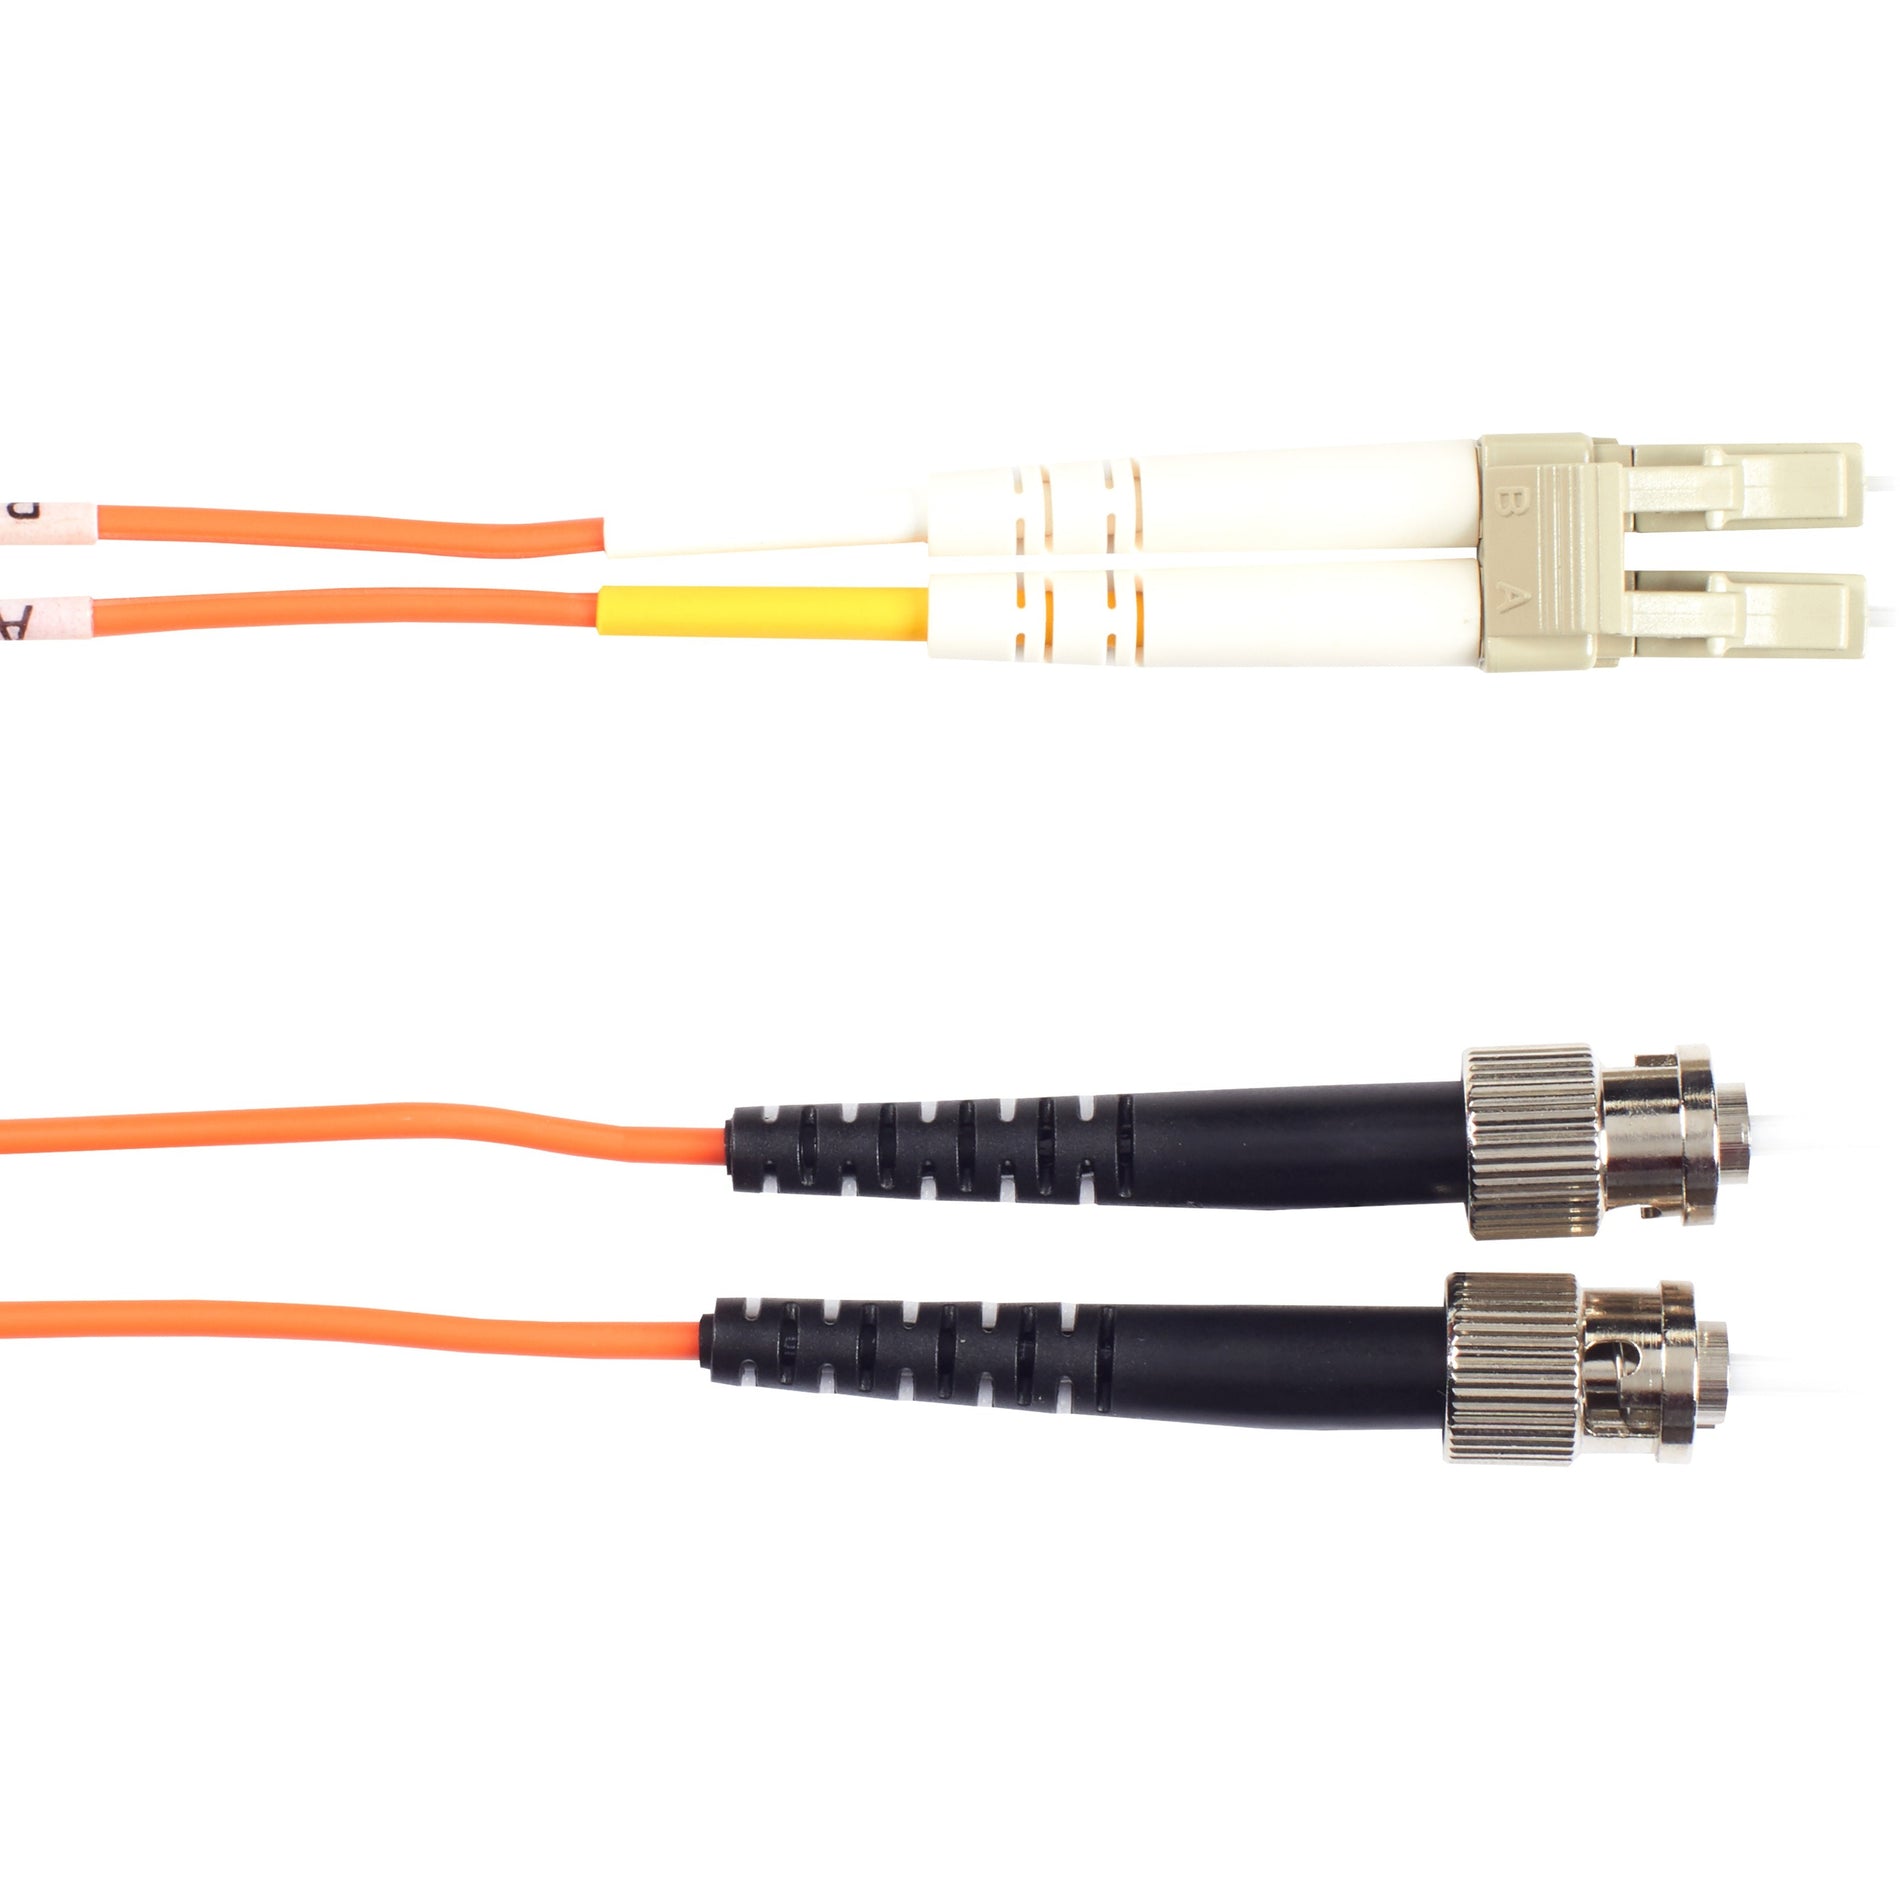 Black Box EFN110-015M-STLC Fiber Optic Duplex Patch Network Cable, Multi-mode, 49.20 ft, ST to LC Male Connectors, Orange Jacket